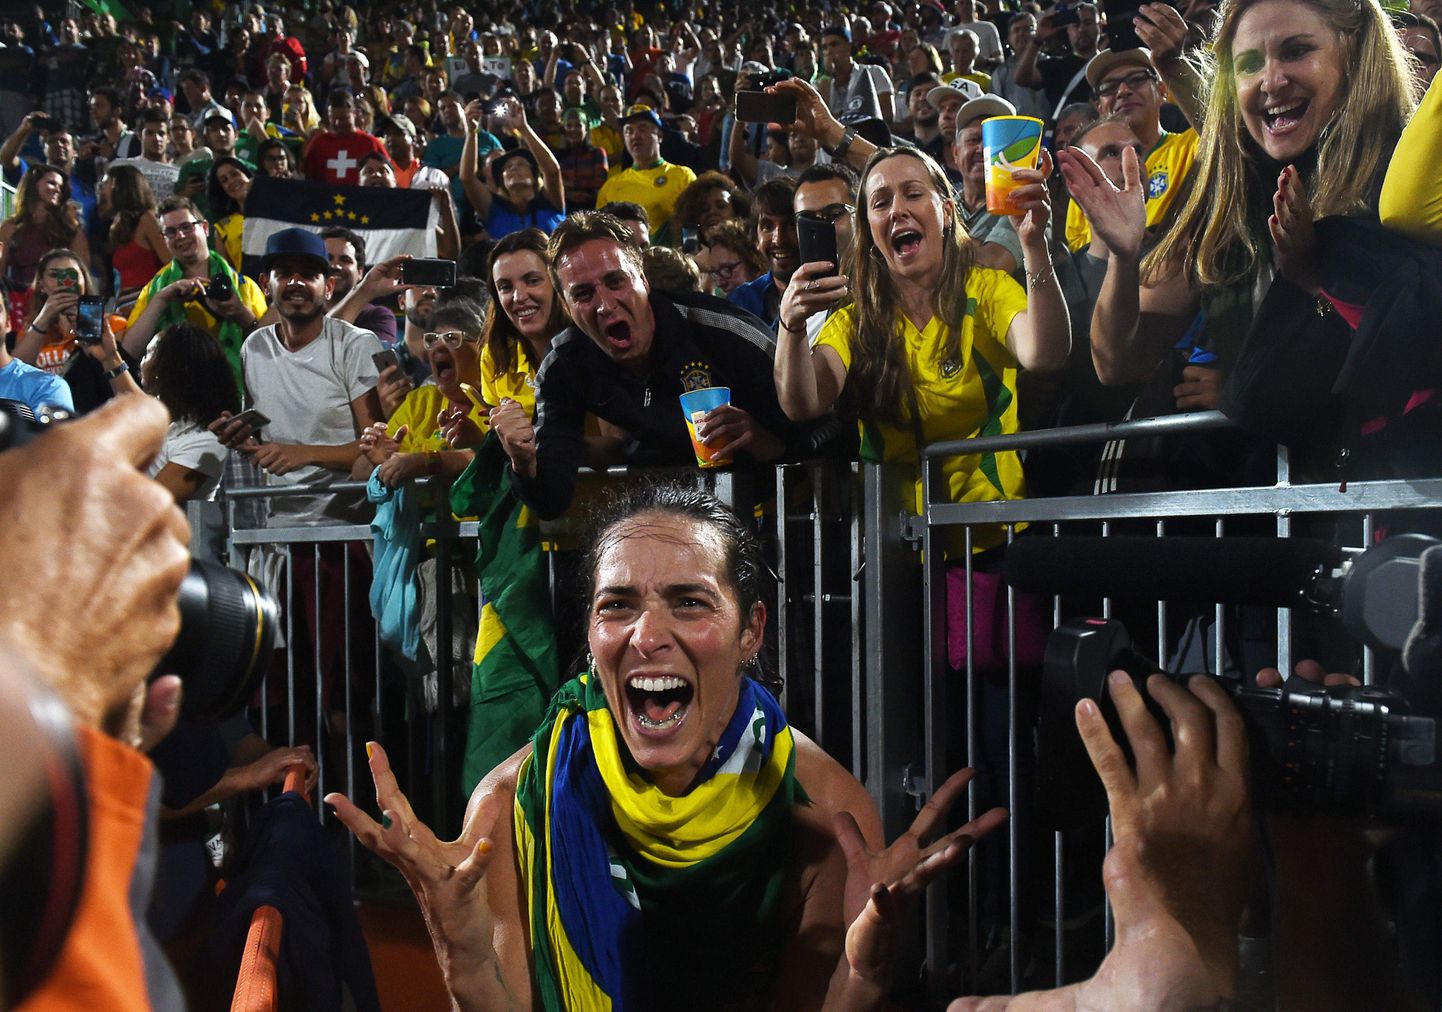 Brasiilia rananvõrkpallur Agatha fännide ees rõõmustamas. Äsja kindlustas ta koos Barbaraga koha Rio olümpia finaalis.